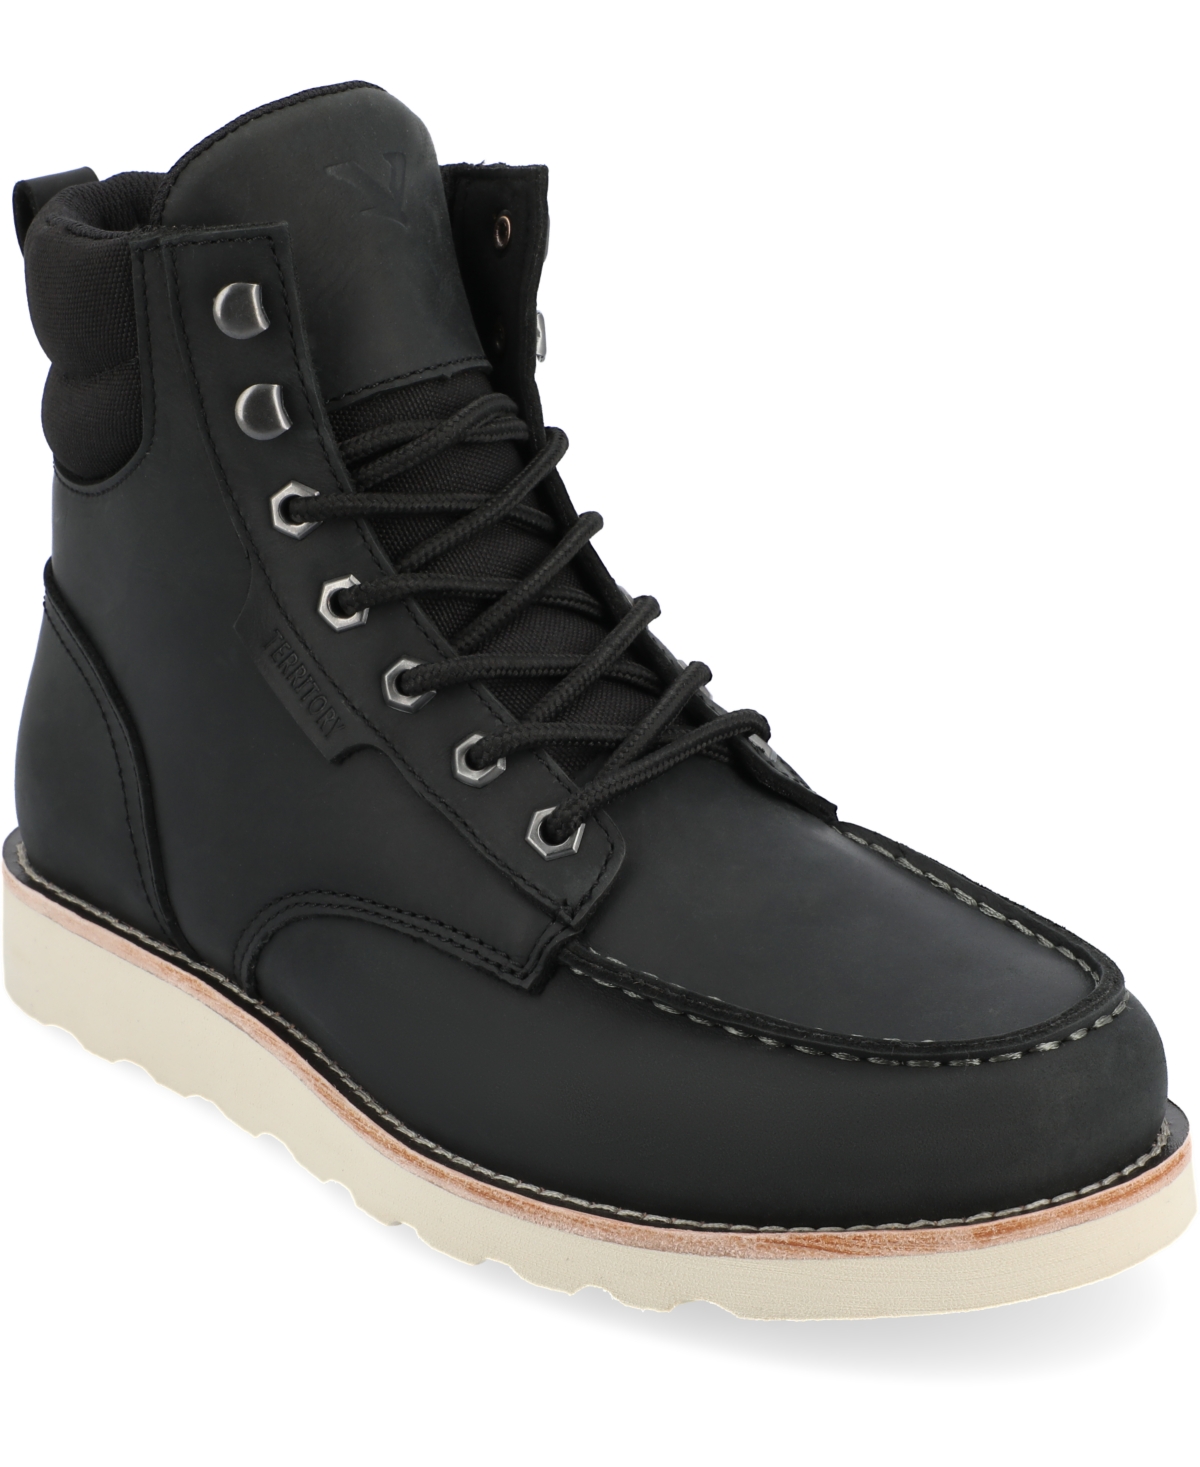 Men's Venture Tru Comfort Foam Moc Toe Lace-up Ankle Boots - Gray